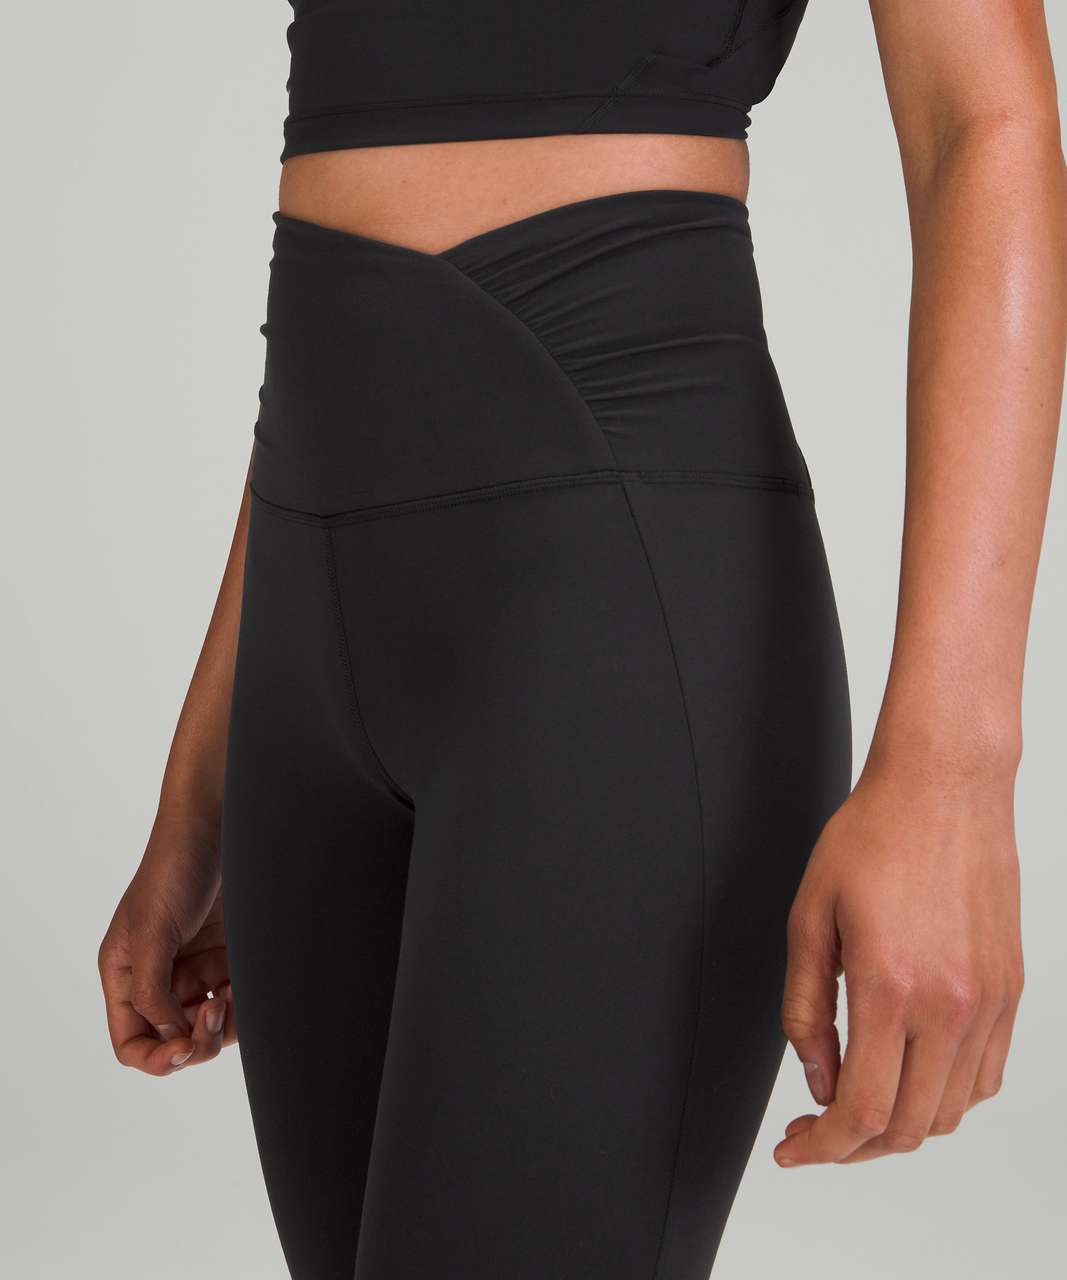 lululemon athletica, Pants & Jumpsuits, Lululemon Reveal Crop 5 Color  Black W6hgps 4 Xs